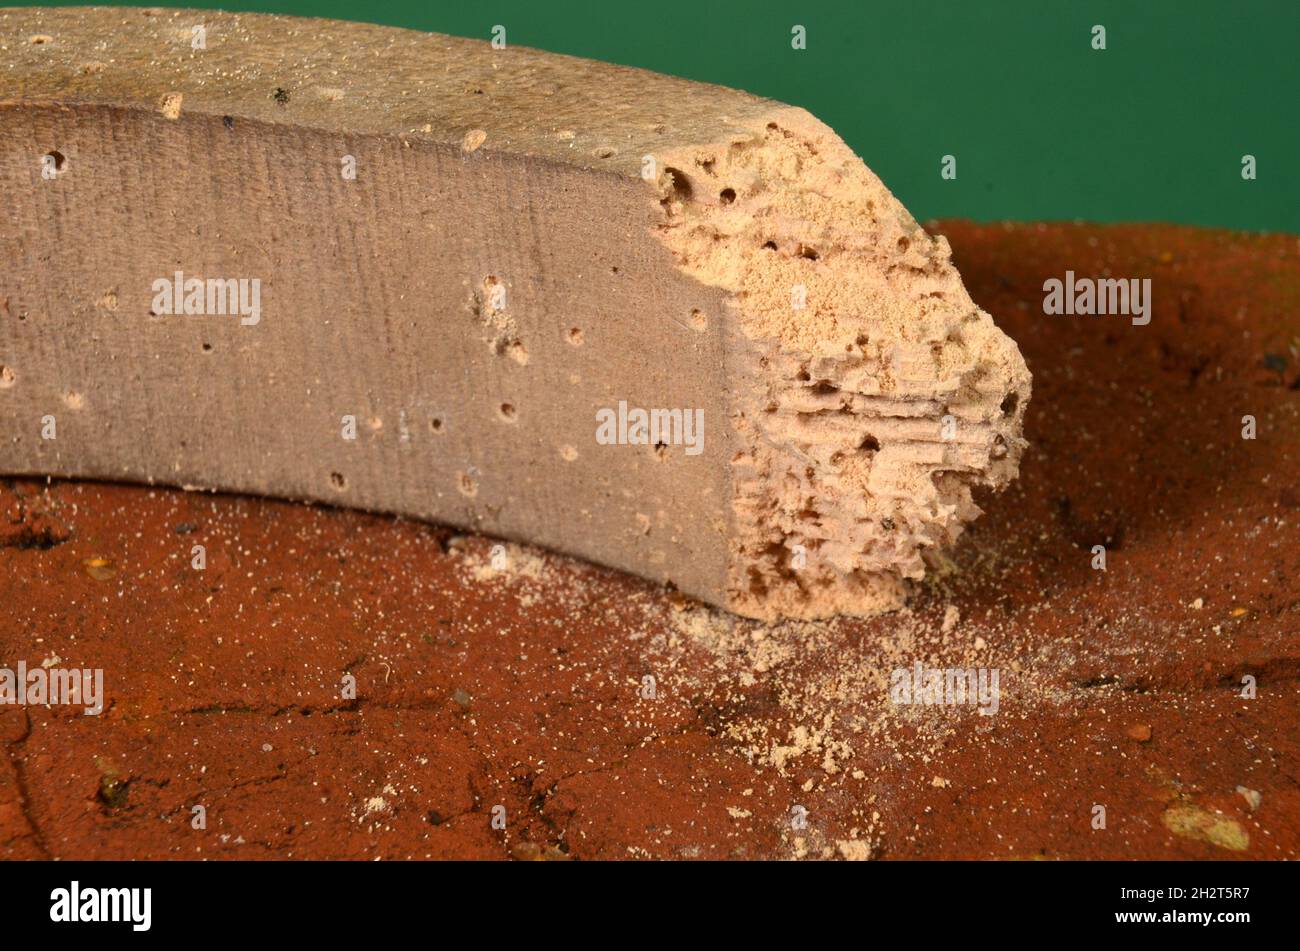 Macrophoto En madera cruda desdeada por escarabajos de muebles comunes, el polvo del otro cerca del objeto indica que hay actividad reciente del escarabajo de muebles Foto de stock